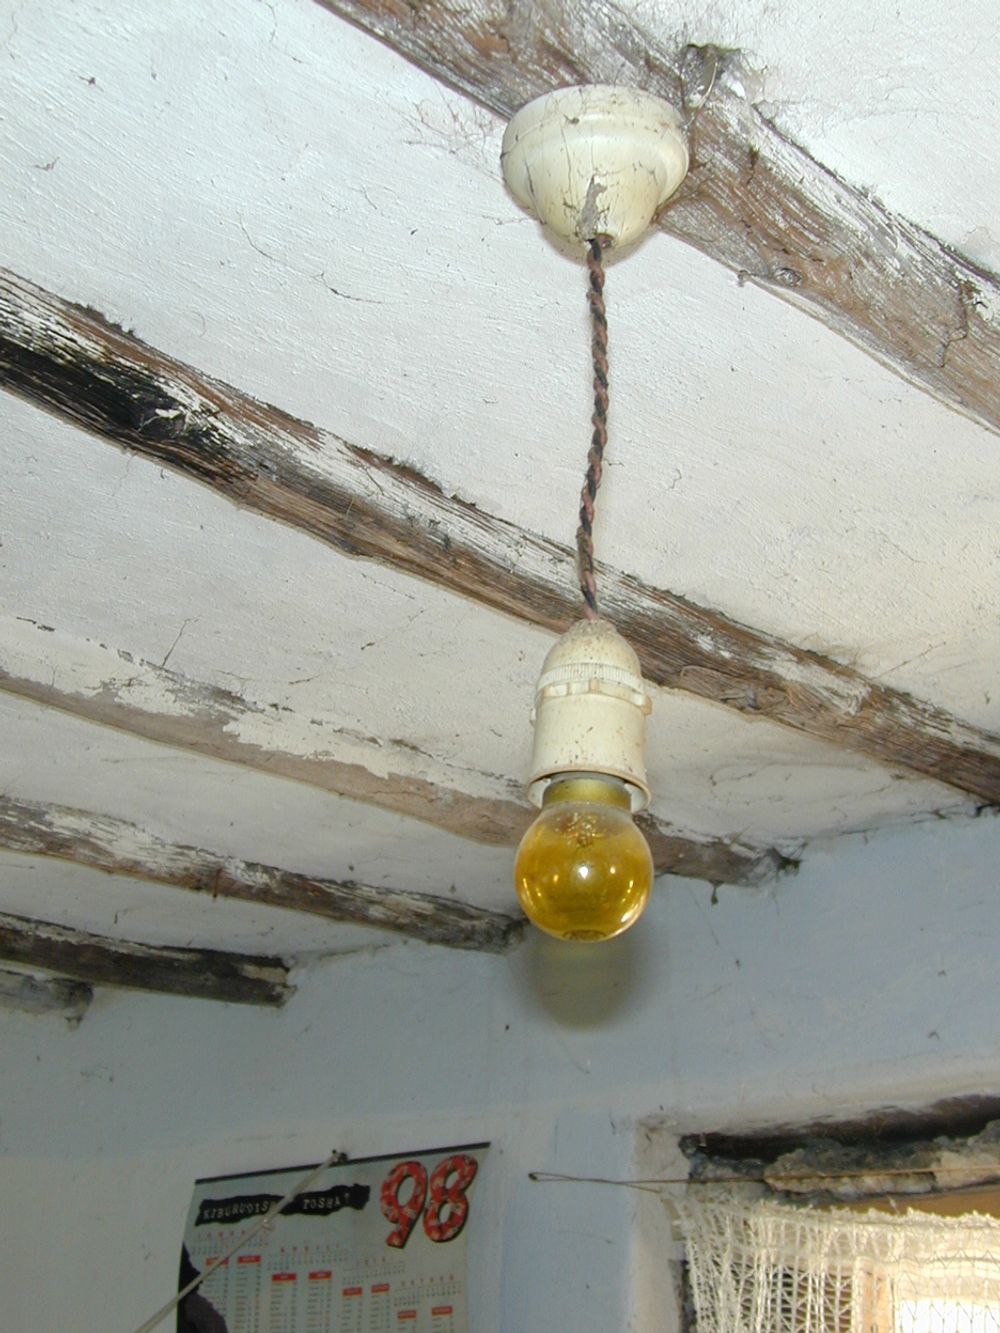 LENGRE DØGN: Ikke en hypermoderne lampe, men elektrisk lys har bidratt til at landsbyboere på Zanzibar kan utnytte flere av døgnets timer.